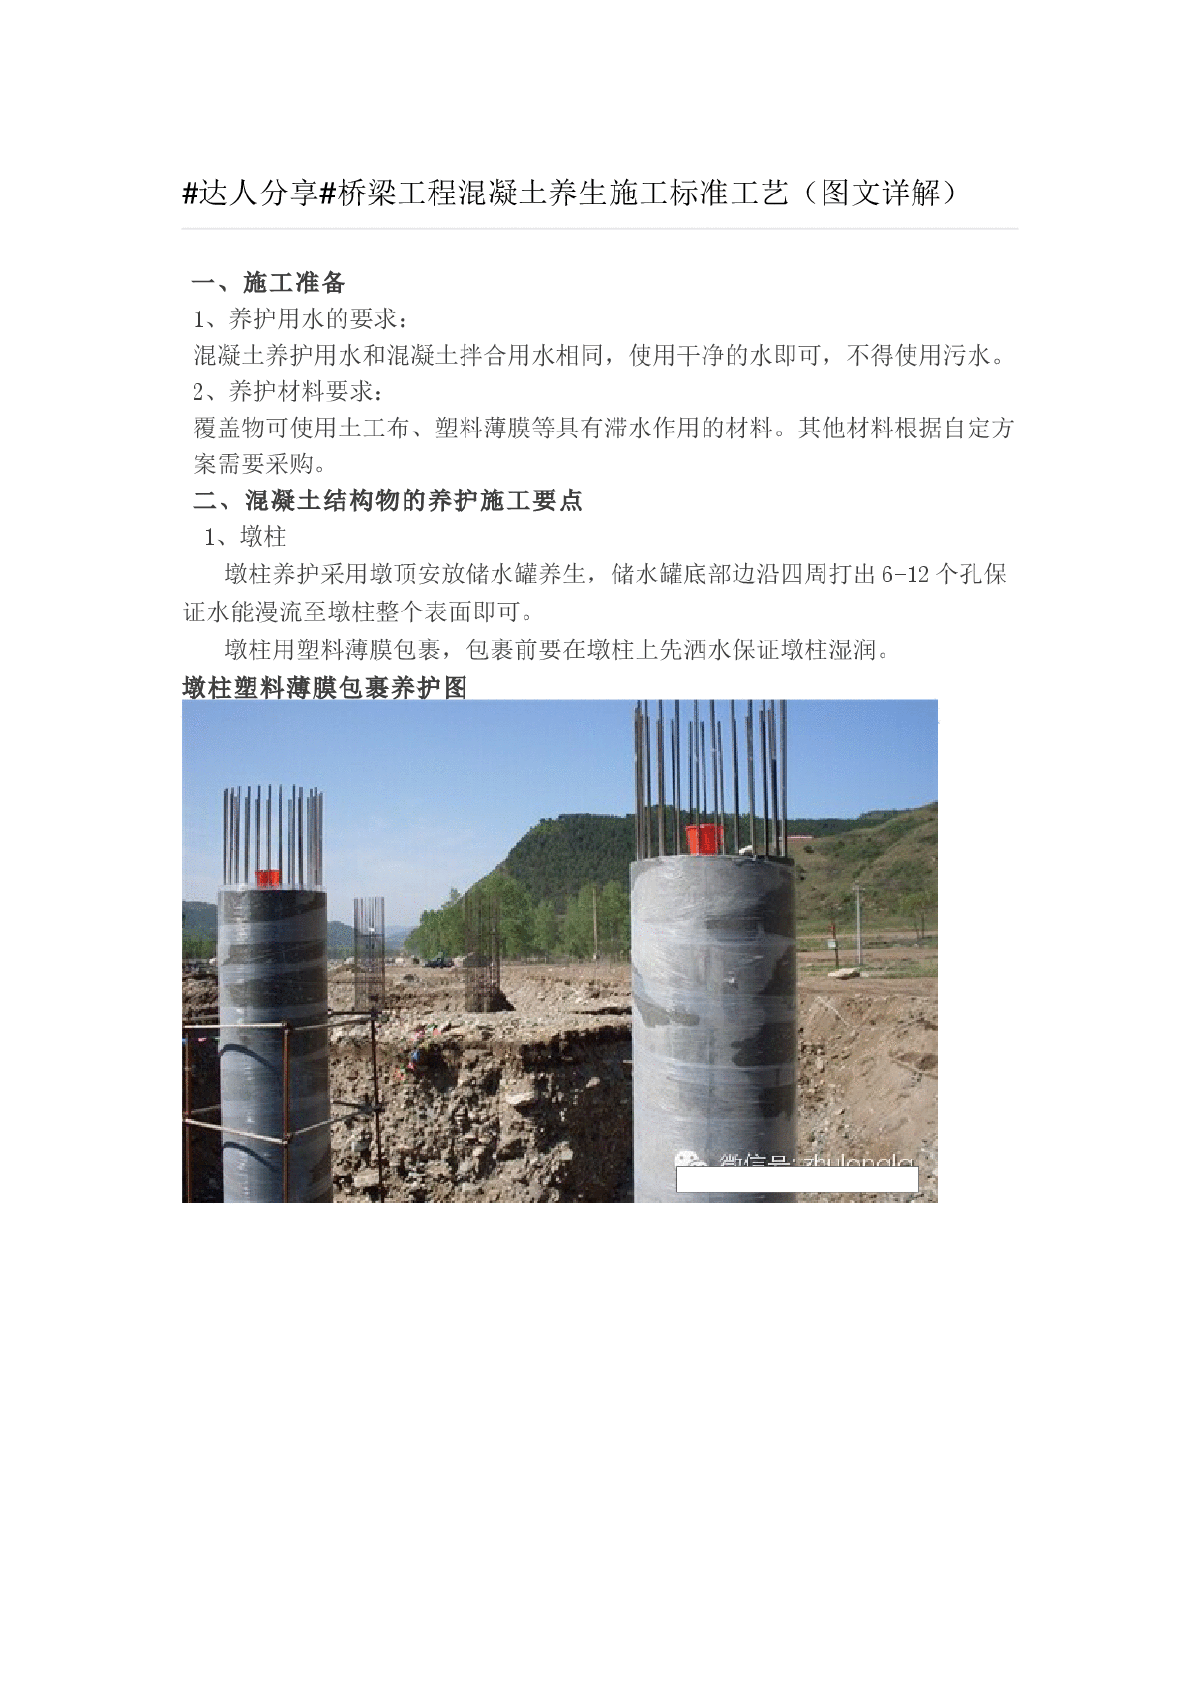 桥梁工程混凝土养生施工标准工艺（图文详解）